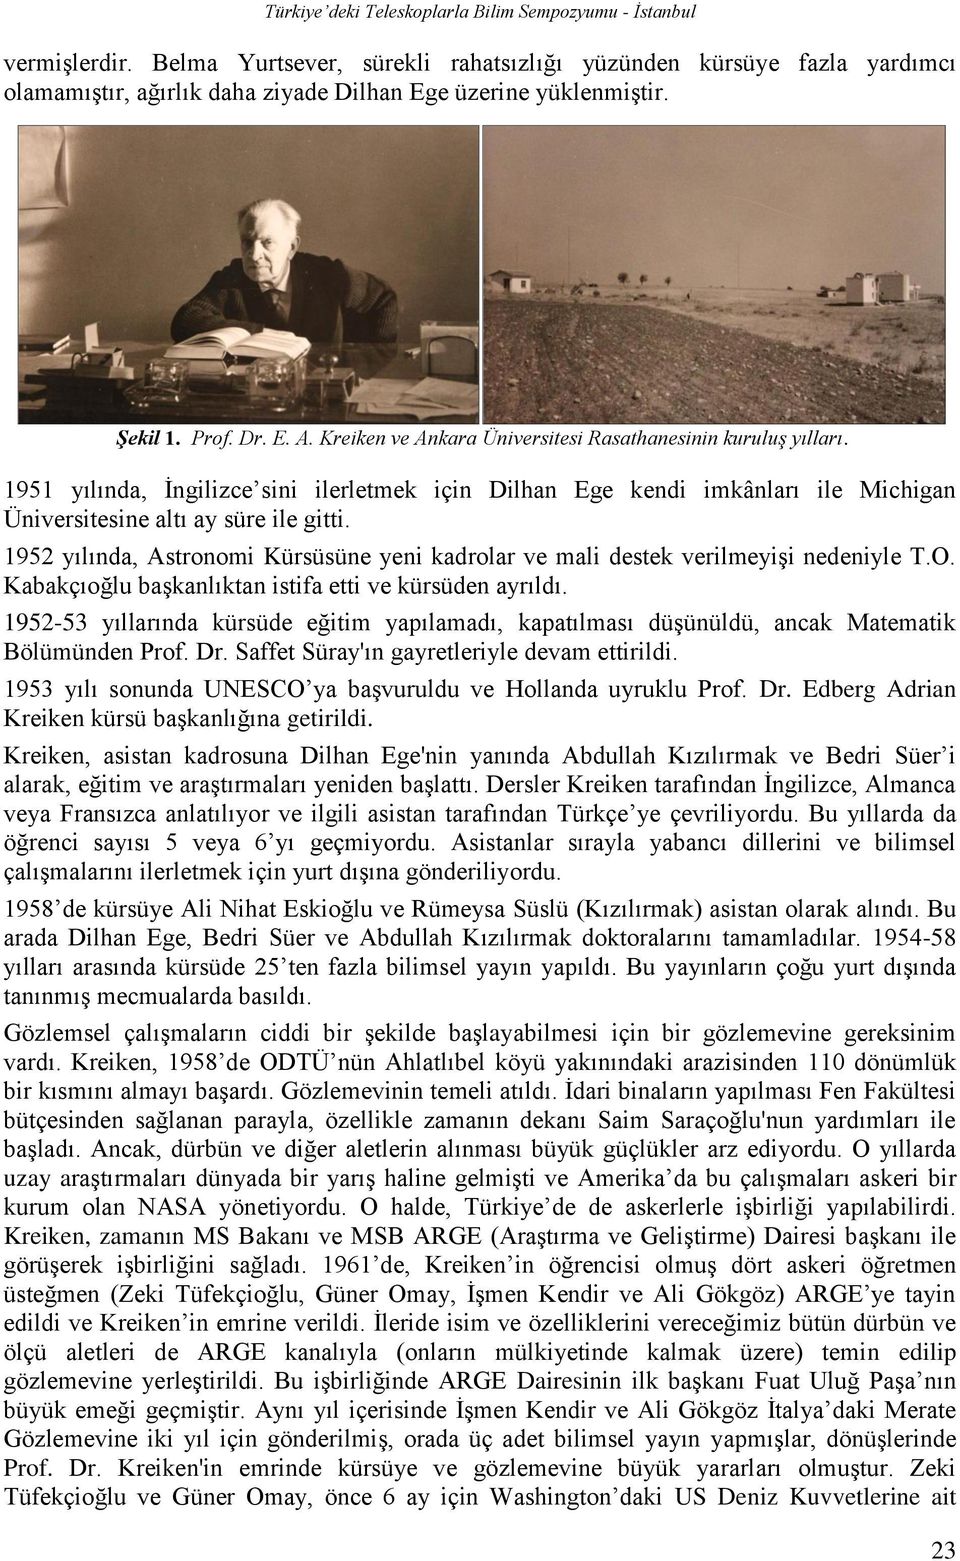 1952 yılında, Astronomi Kürsüsüne yeni kadrolar ve mali destek verilmeyişi nedeniyle T.O. Kabakçıoğlu başkanlıktan istifa etti ve kürsüden ayrıldı.